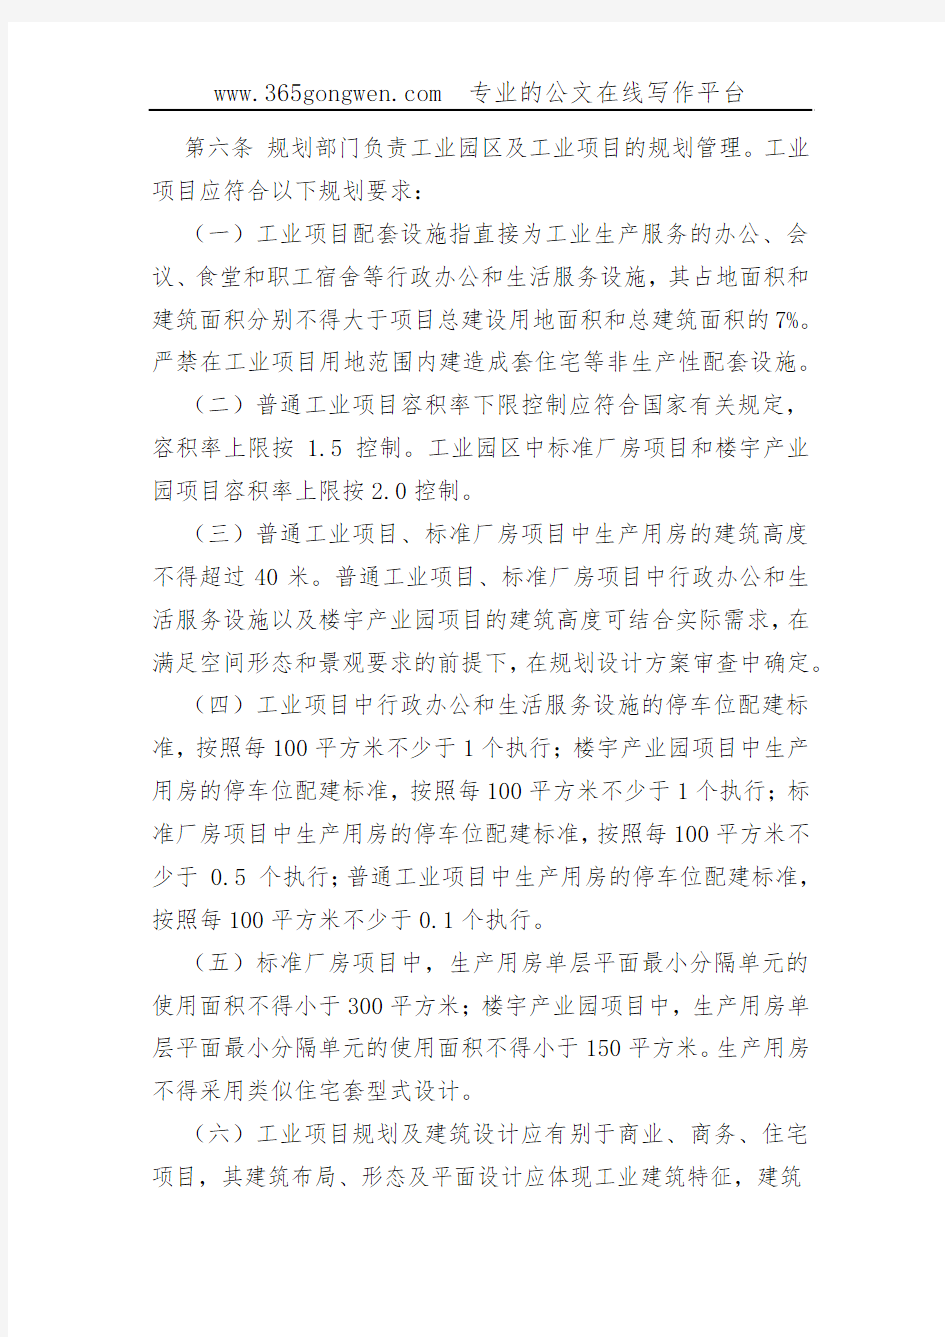 【工信办法】重庆市工业园区及工业项目规划管理办法(00002)